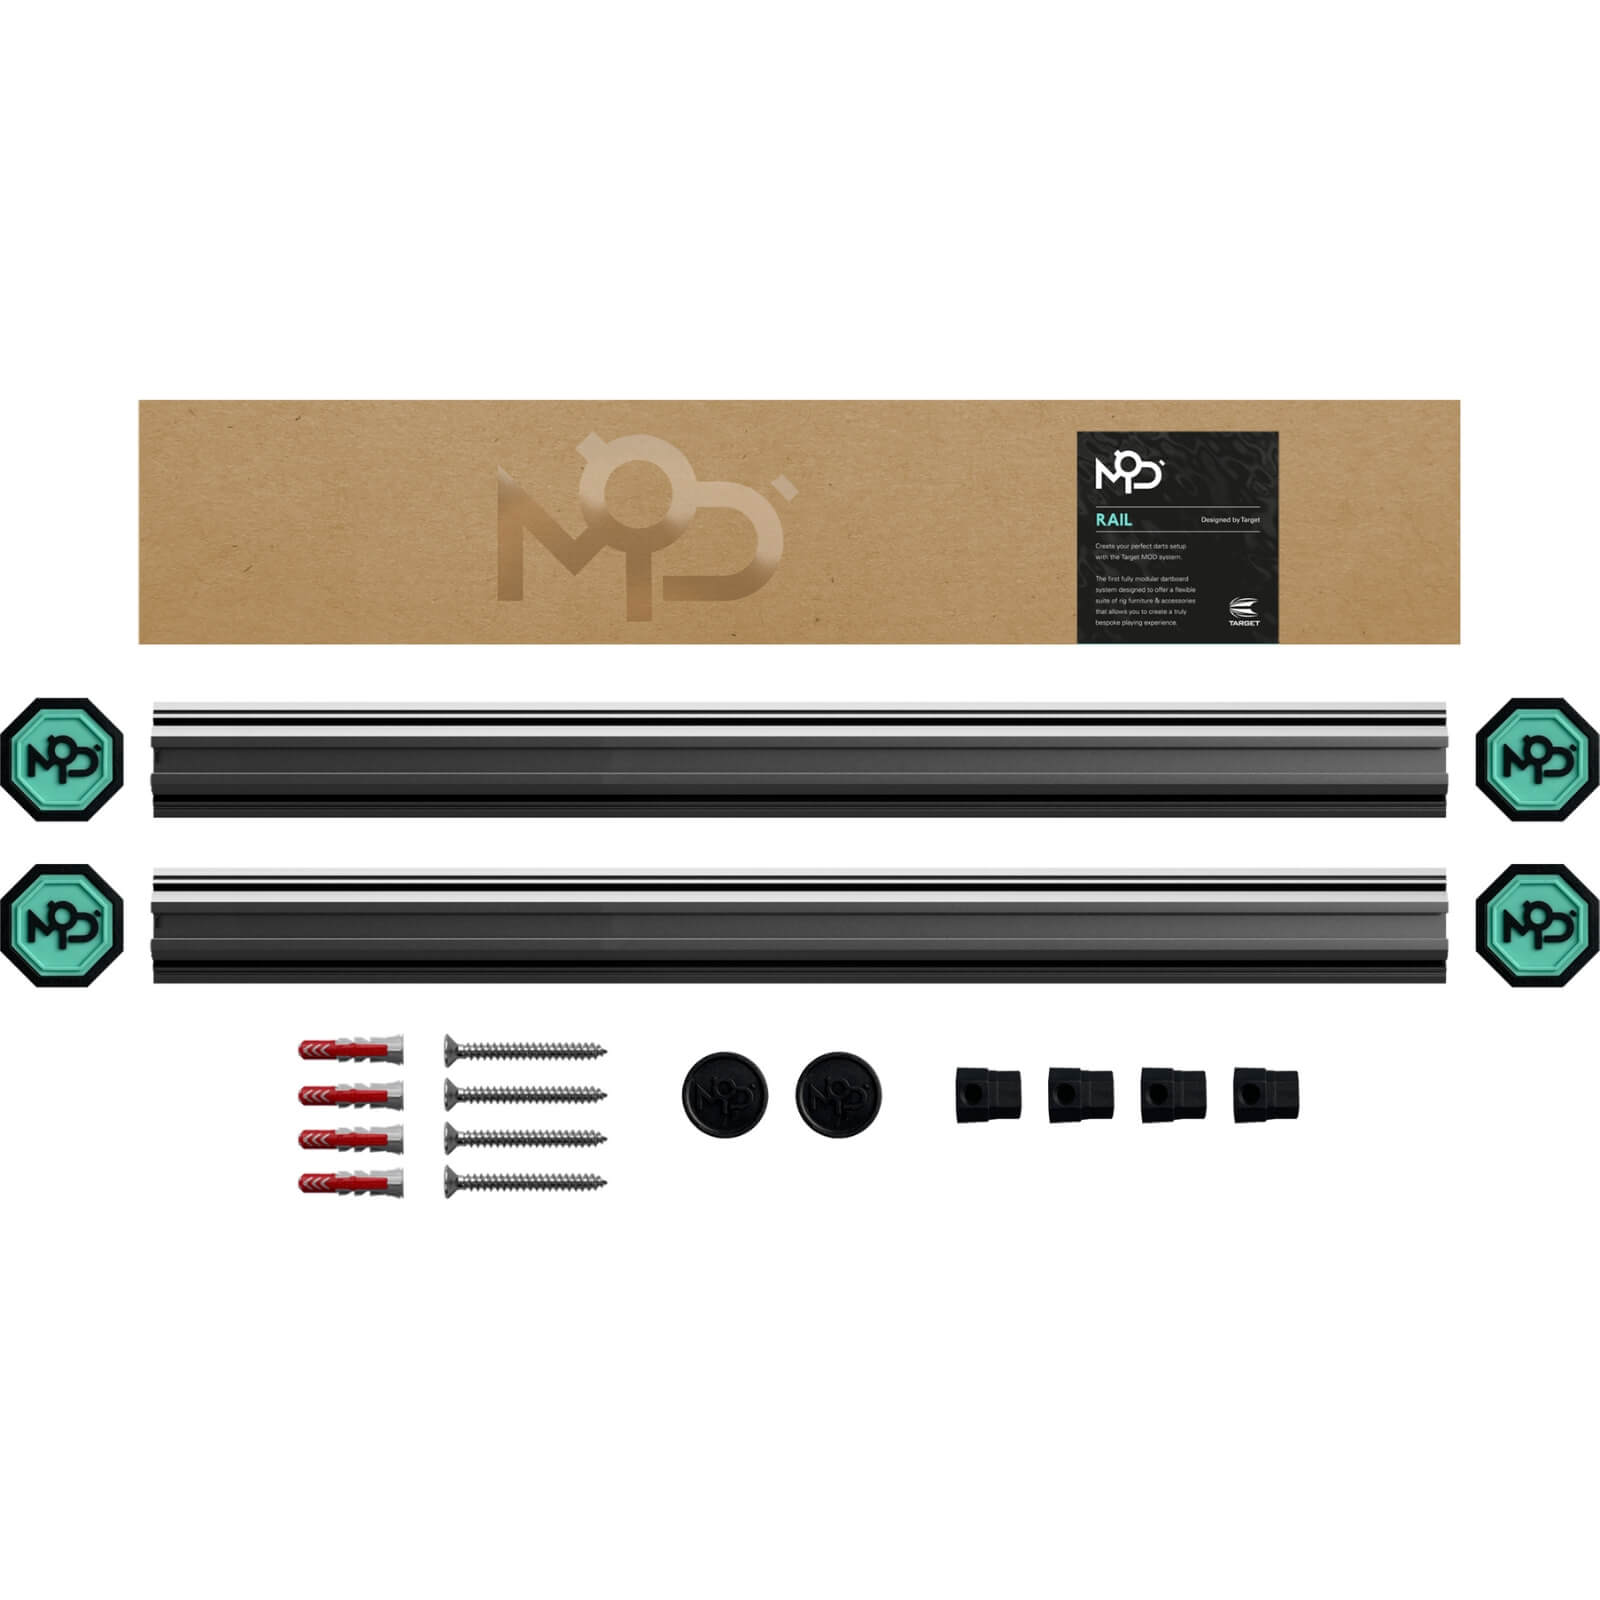 Dartboard Accessories - Target - MOD - Rails - 2 x 350mm 